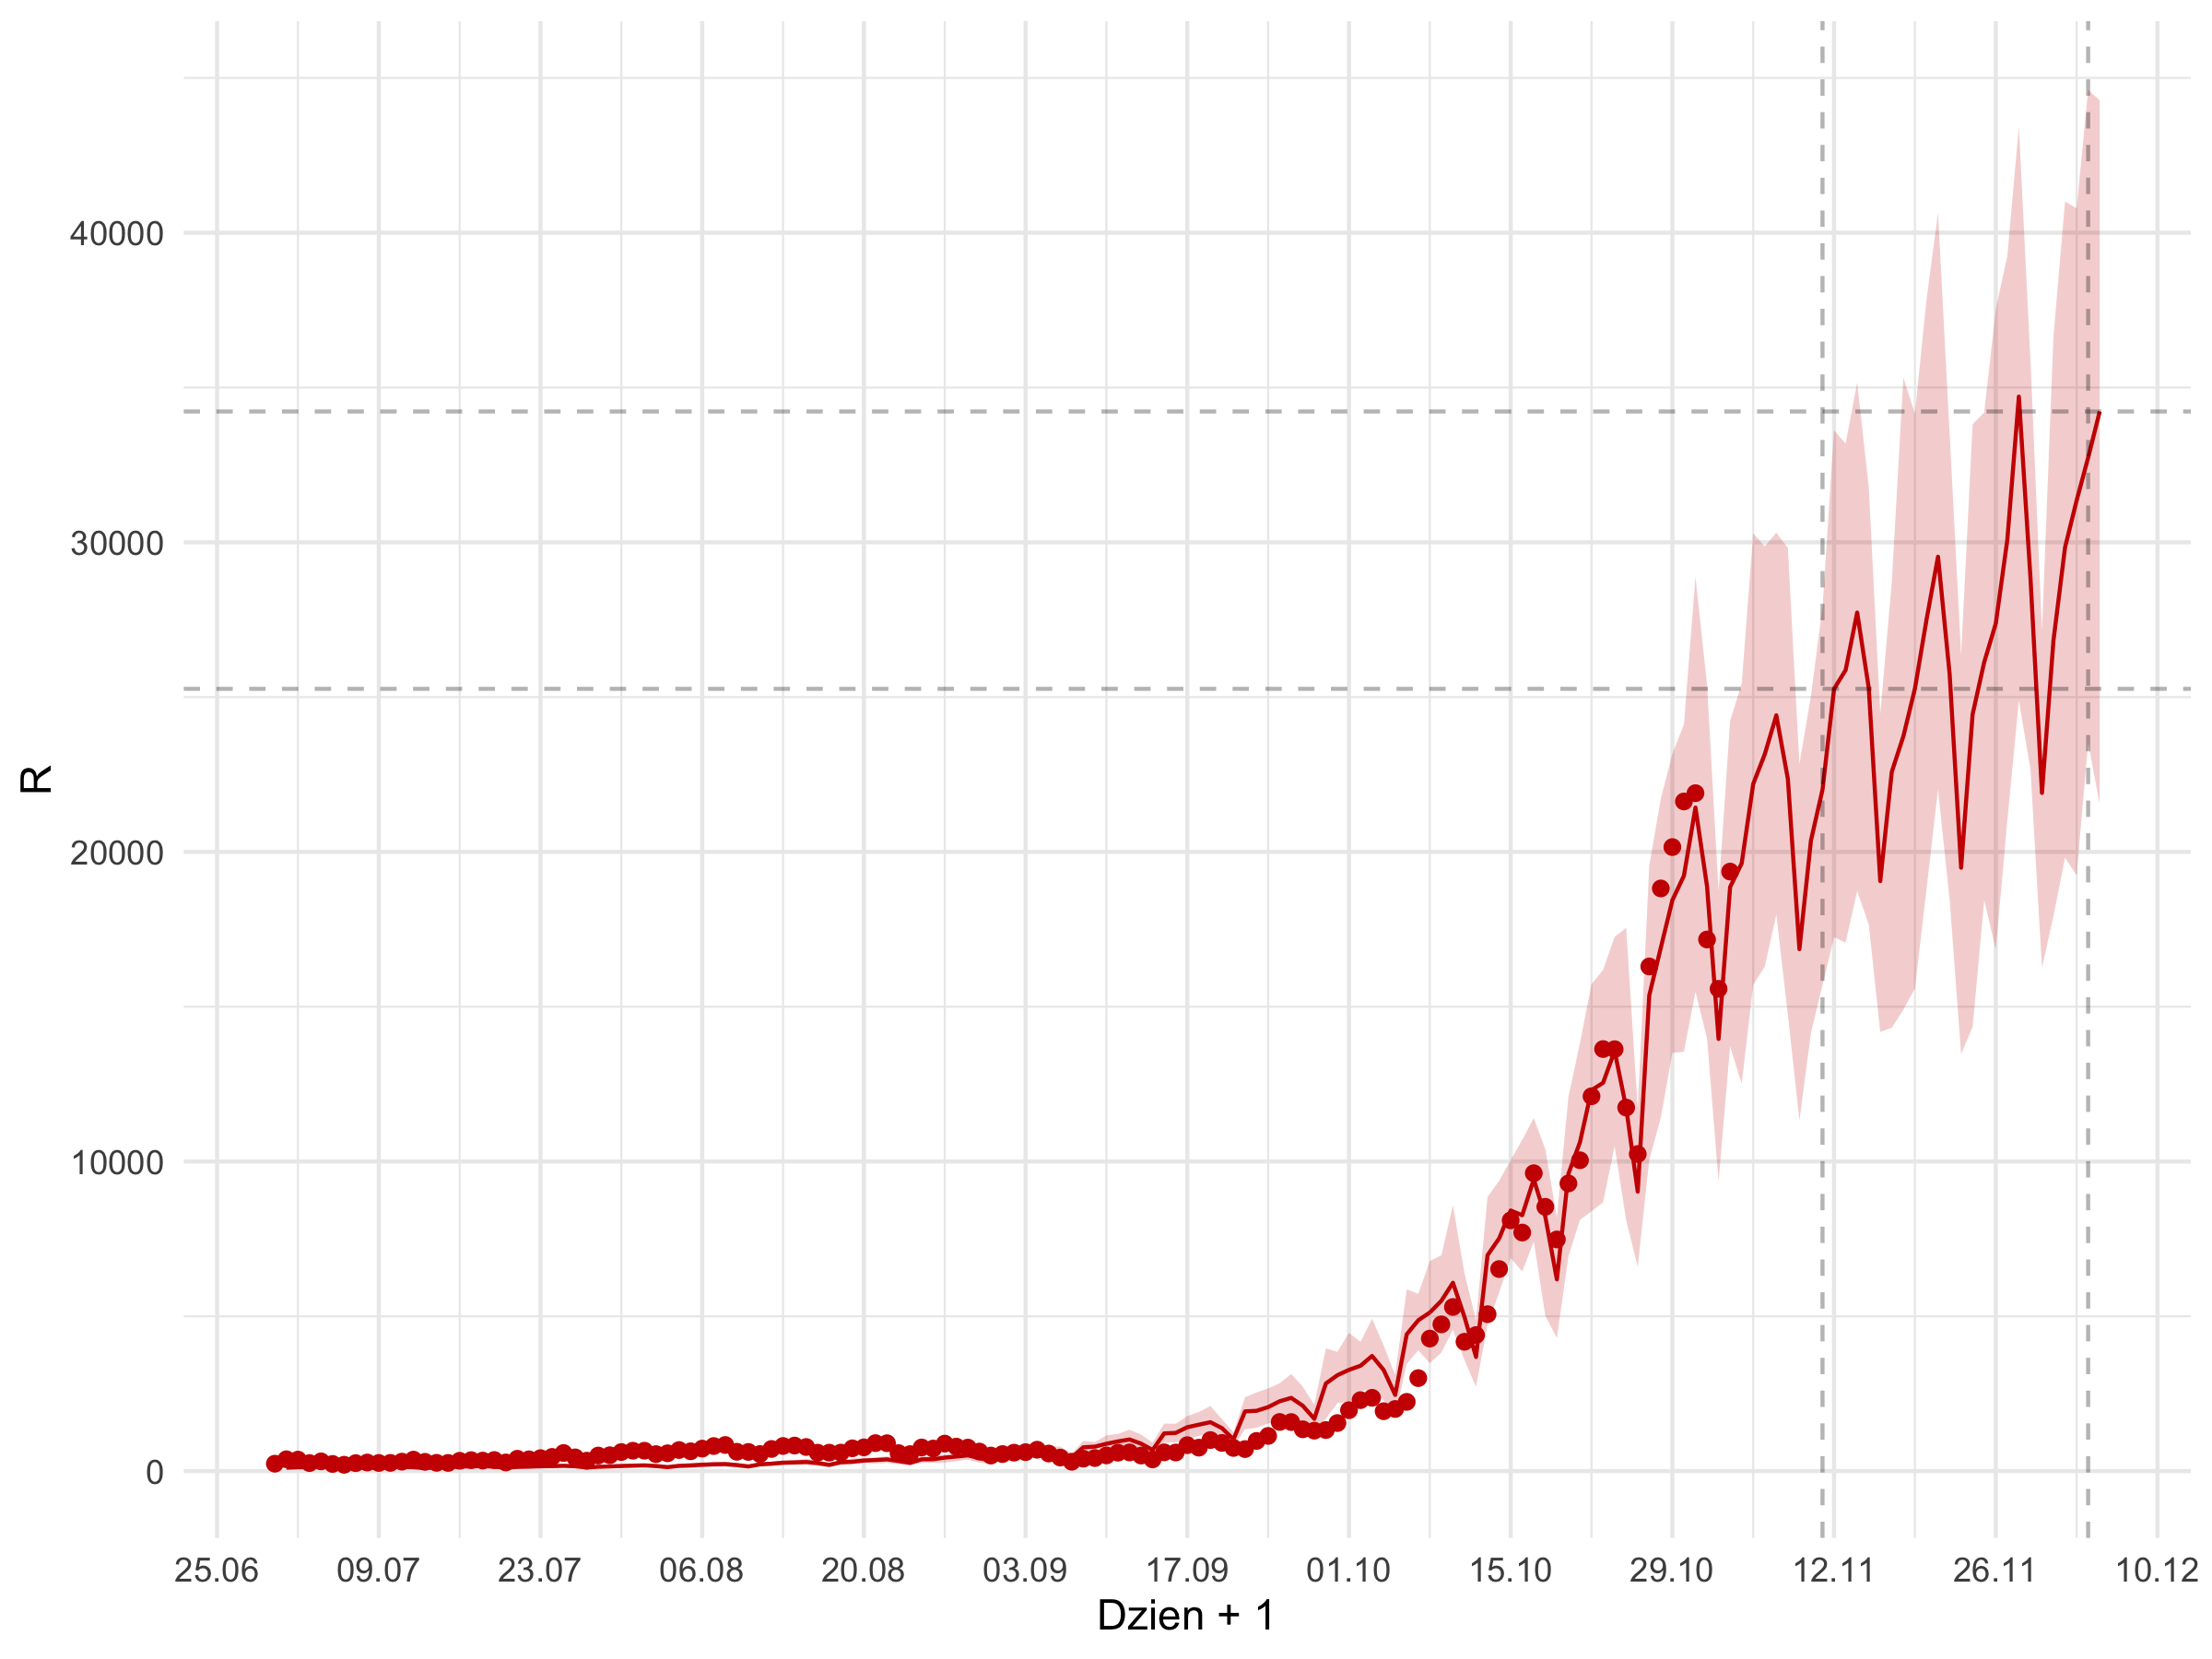 Średnioterminowa prognoza dziennej liczby rozpoznań zdiagnozowanych (czerwona linia) w modelu stochastycznym. Czerwonymi kropkami oznaczono obserwowane dane. Czerwona linia pokazuje predykcję z modelu - do 01.07 jest to predykcja w oparciu o obserwowane liczby wykonanych testów, następnie przyjęto trend liczbie wykonywanych badań.